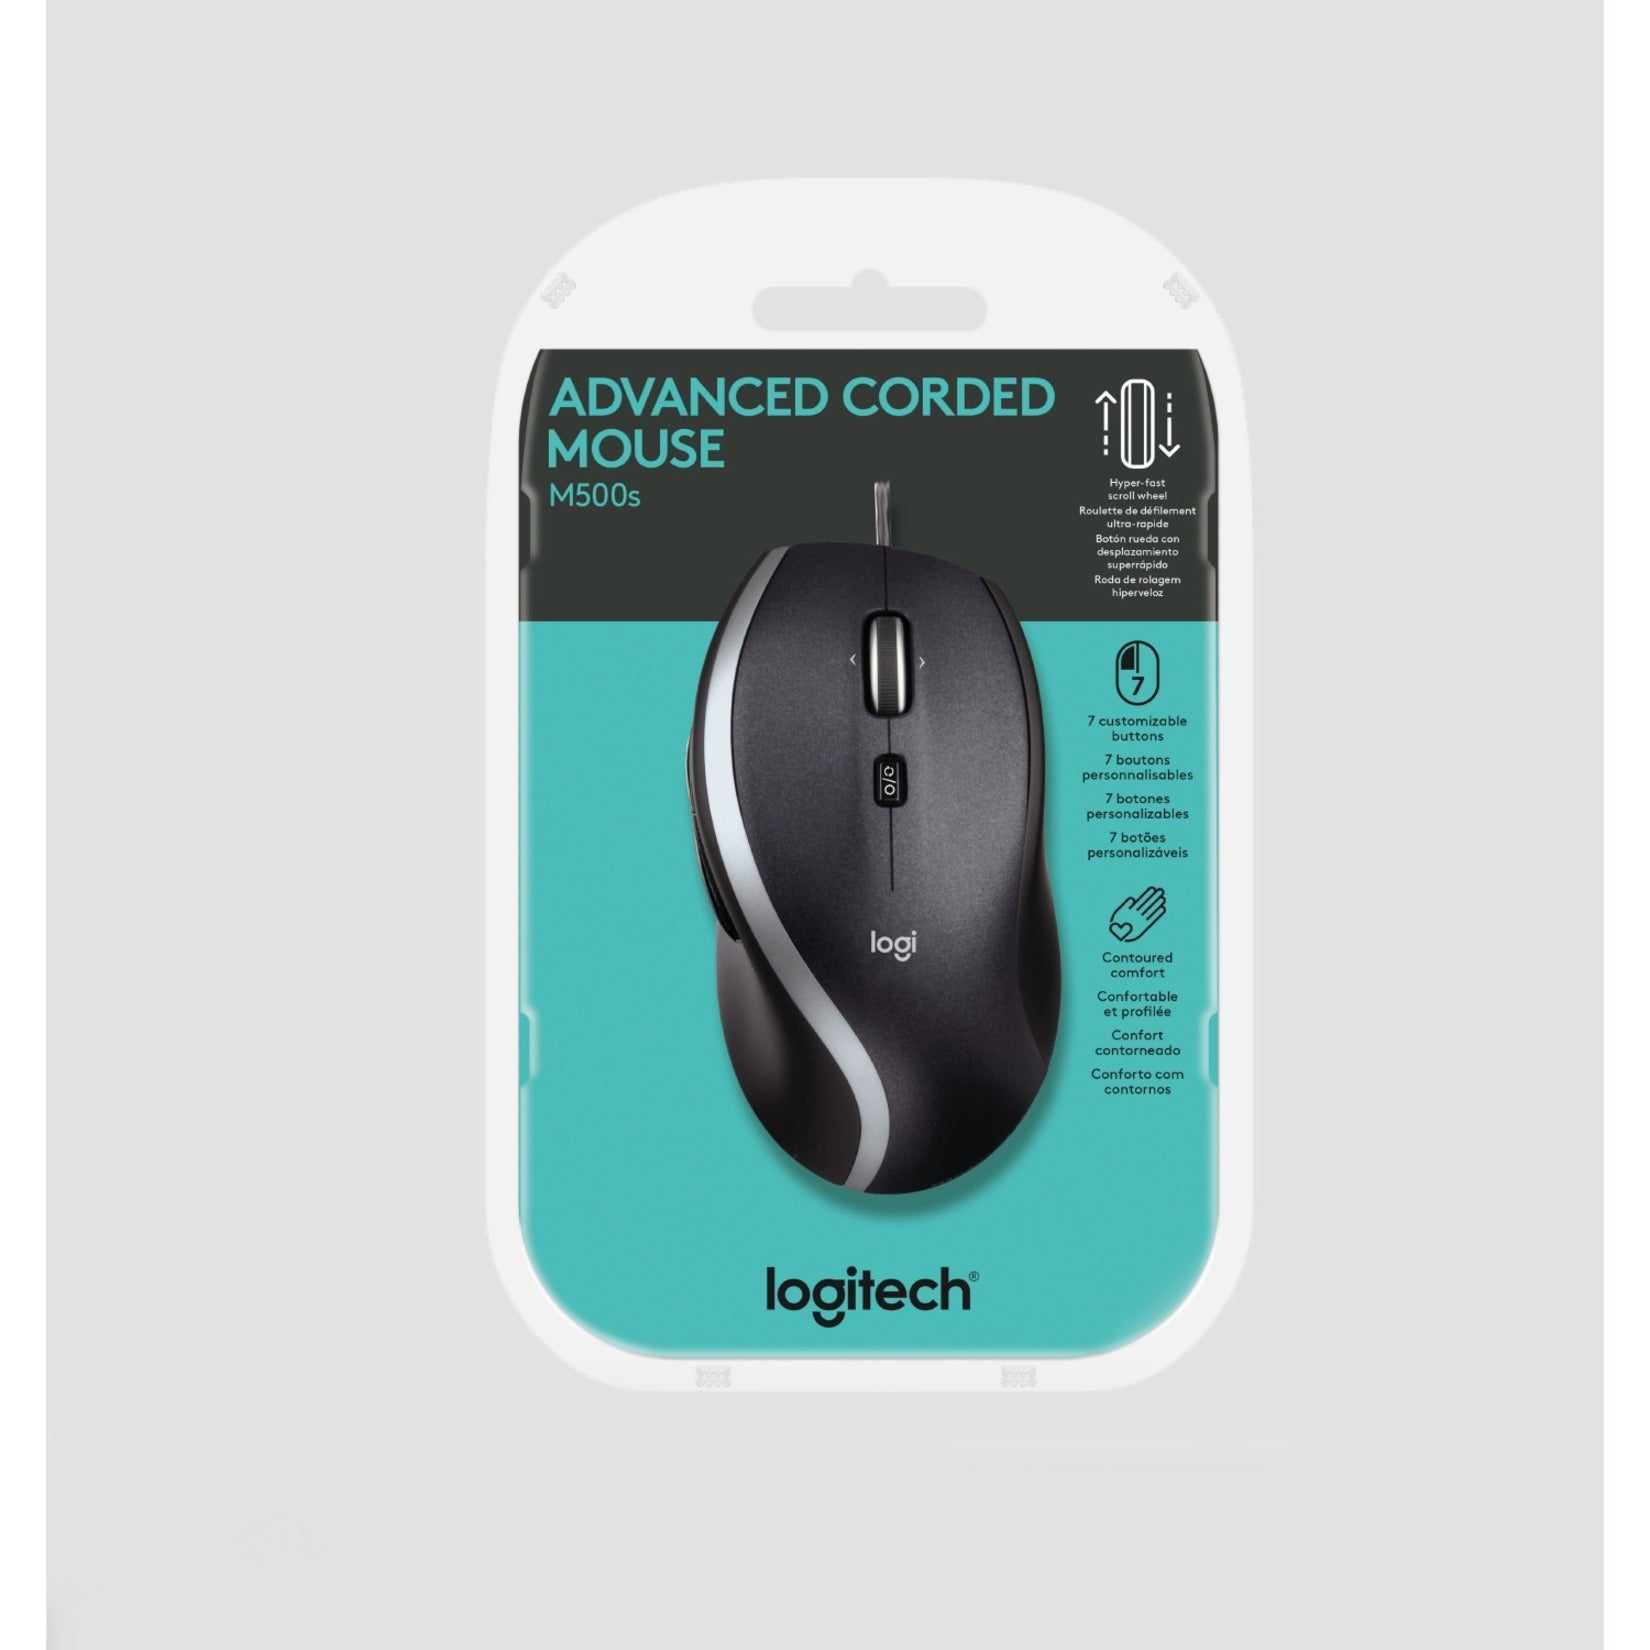 Logitech 910-005783 M500S Advanced Corded Mouse, Full-size, Tilt Wheel, 4000 dpi, USB